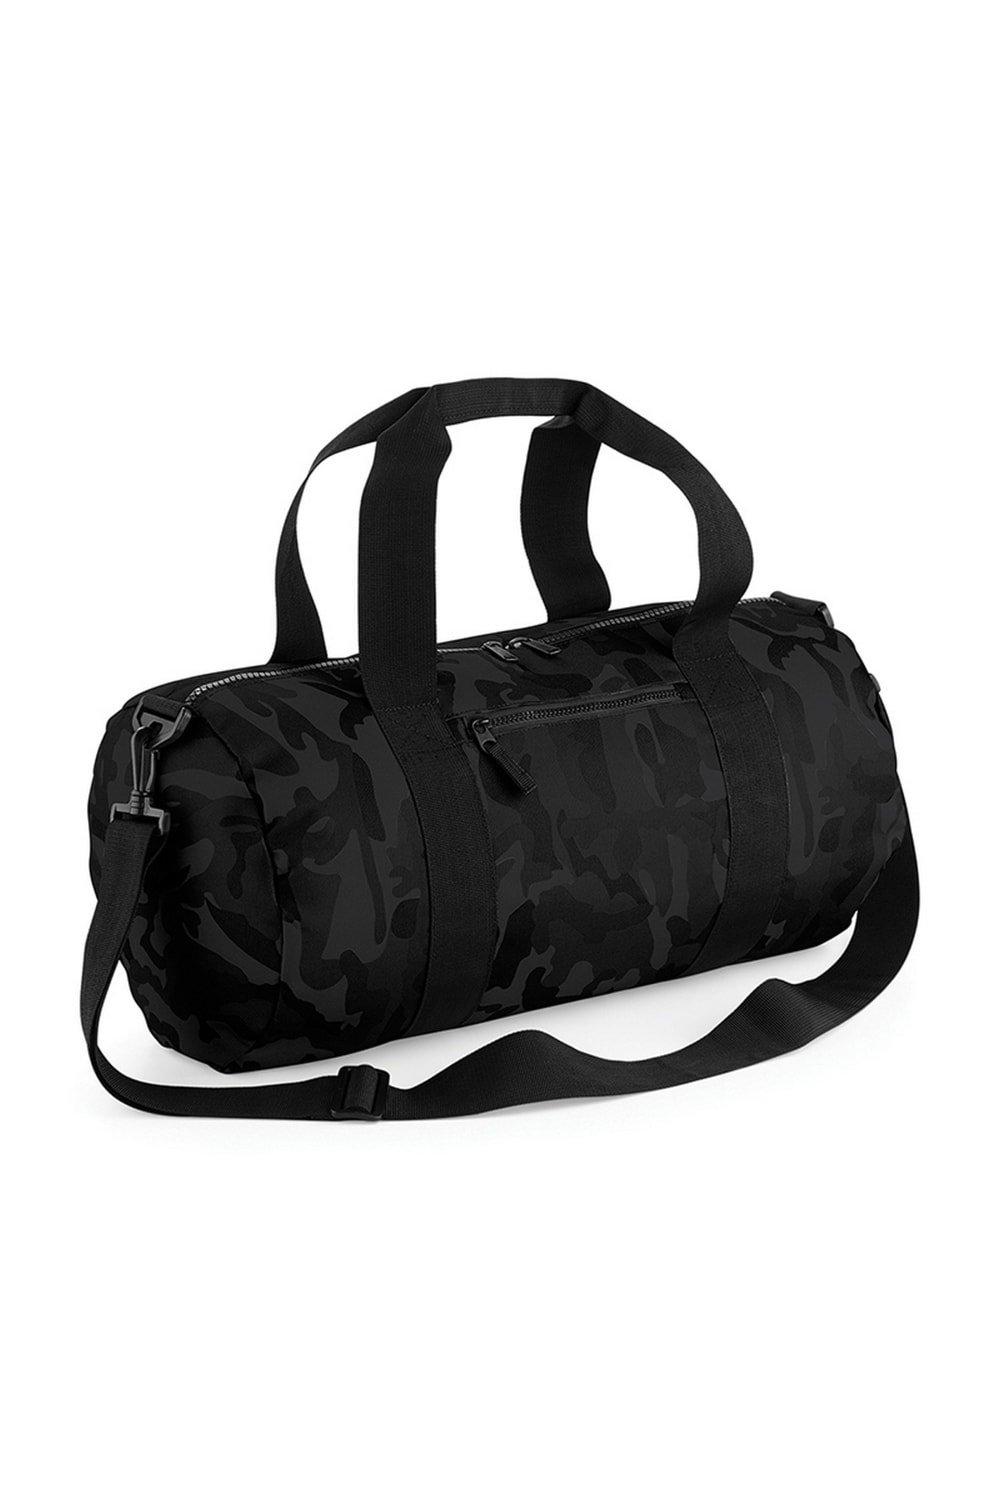 Камуфляжная бочка/спортивная сумка (20 литров) Bagbase, черный бочка пластиковая 127 литров синий фиолетовый